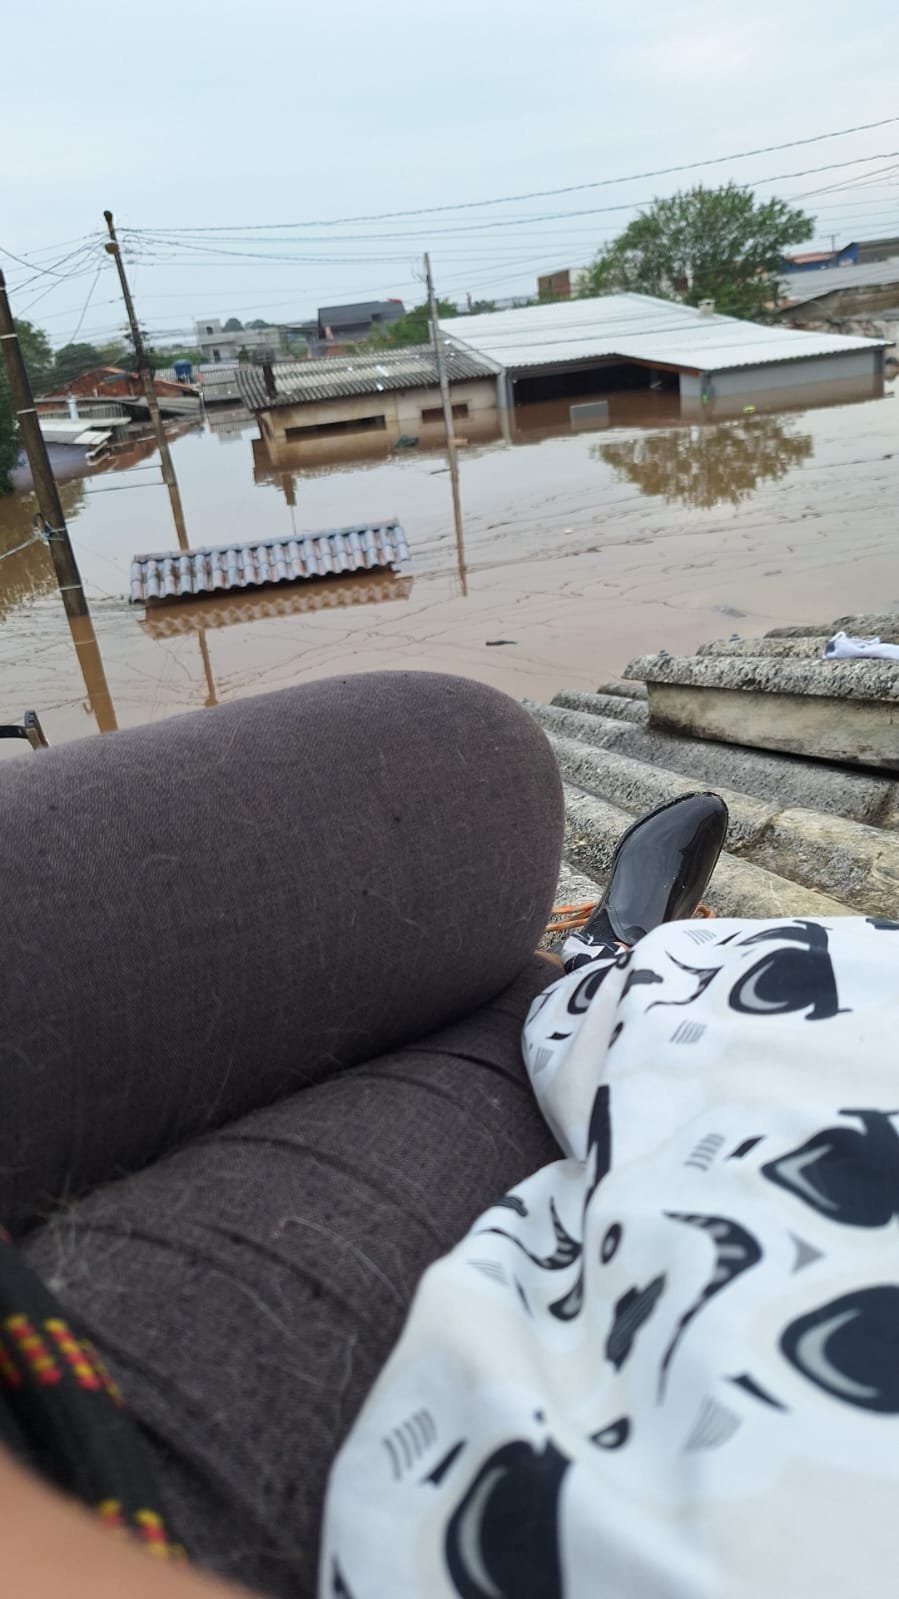 CATÁSTROFE NO RS: "A água está subindo e não há previsão de resgate", diz jovem no telhado